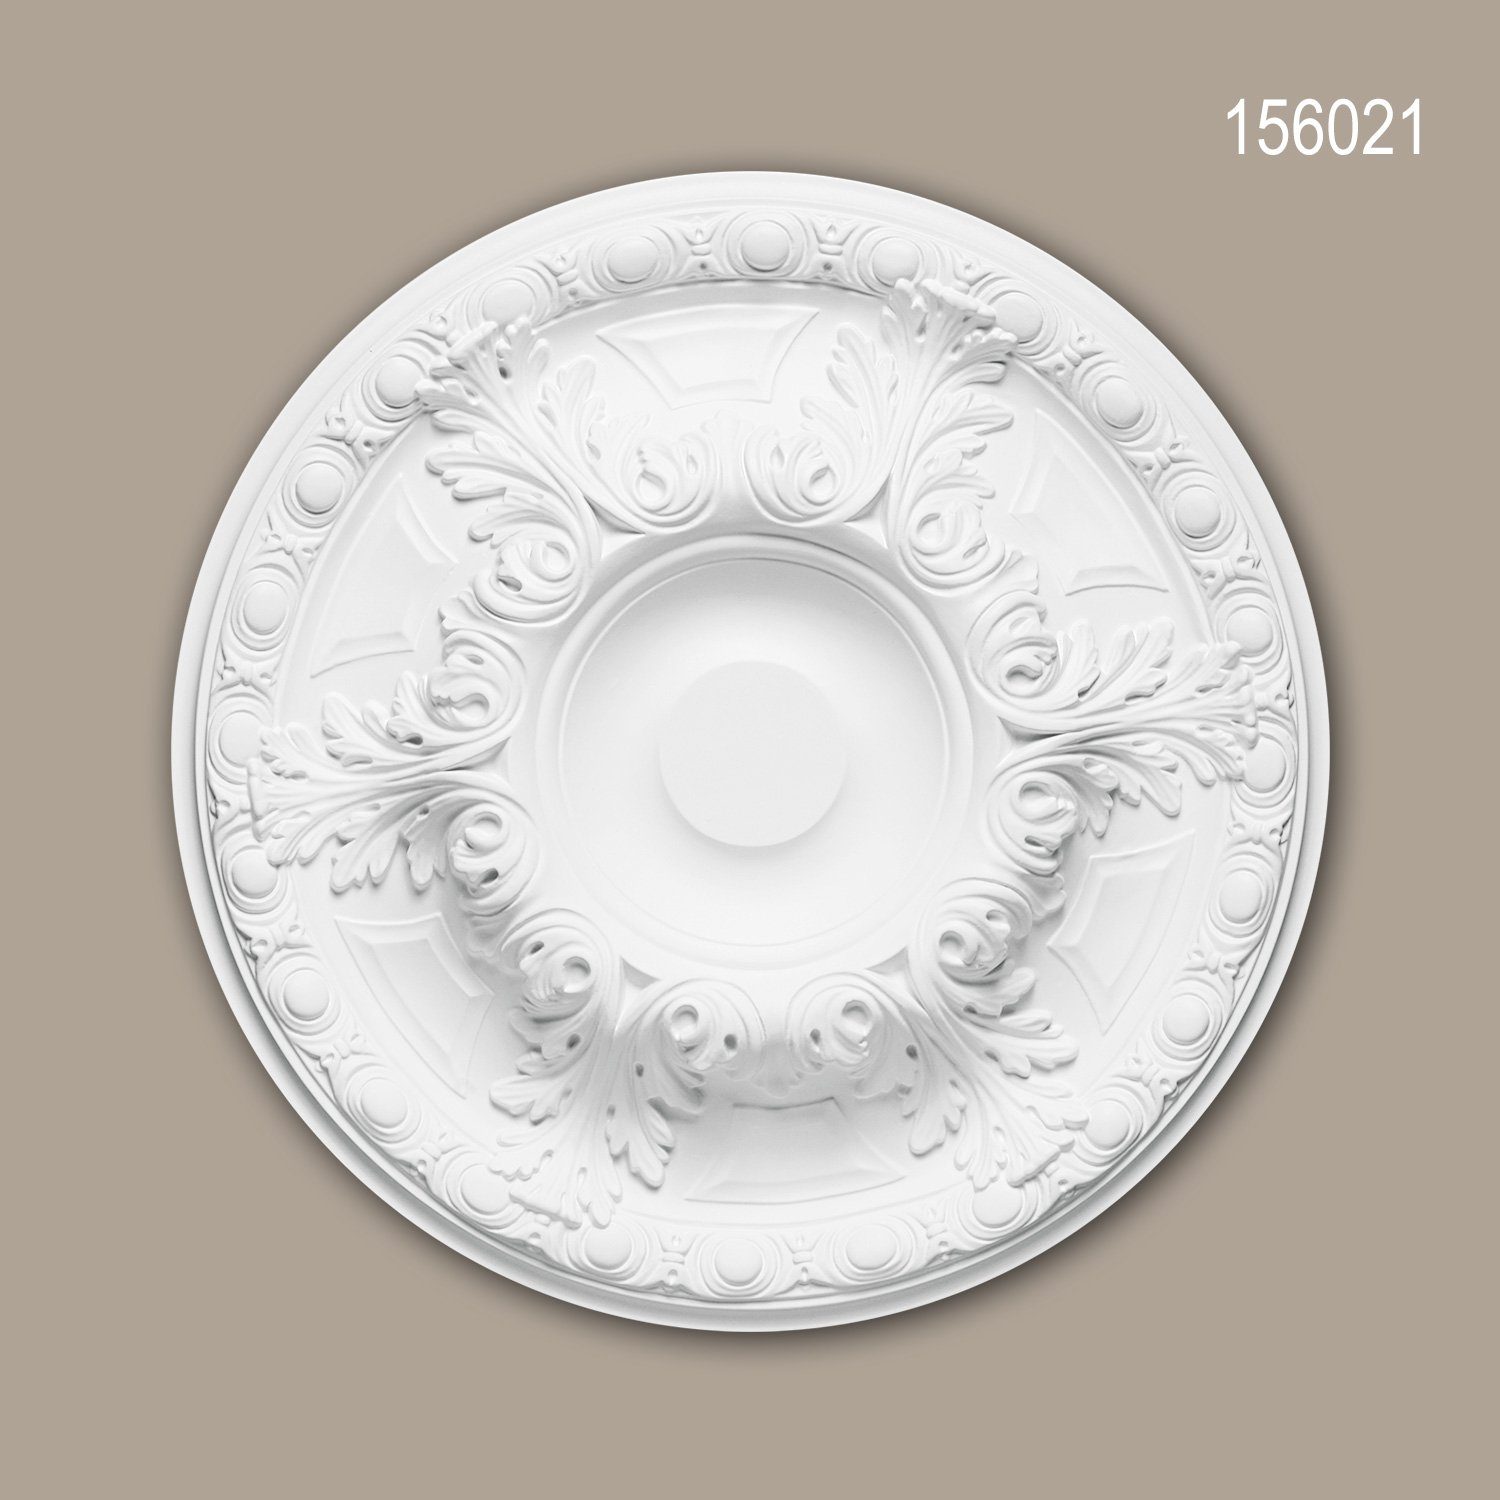 Profhome Decken-Rosette 156021 (Rosette, 1 St., Deckenrosette, Medallion, Stuckrosette, Deckenelement, Zierelement, Durchmesser 49 cm), weiß, vorgrundiert, Stil: Neo-Renaissance